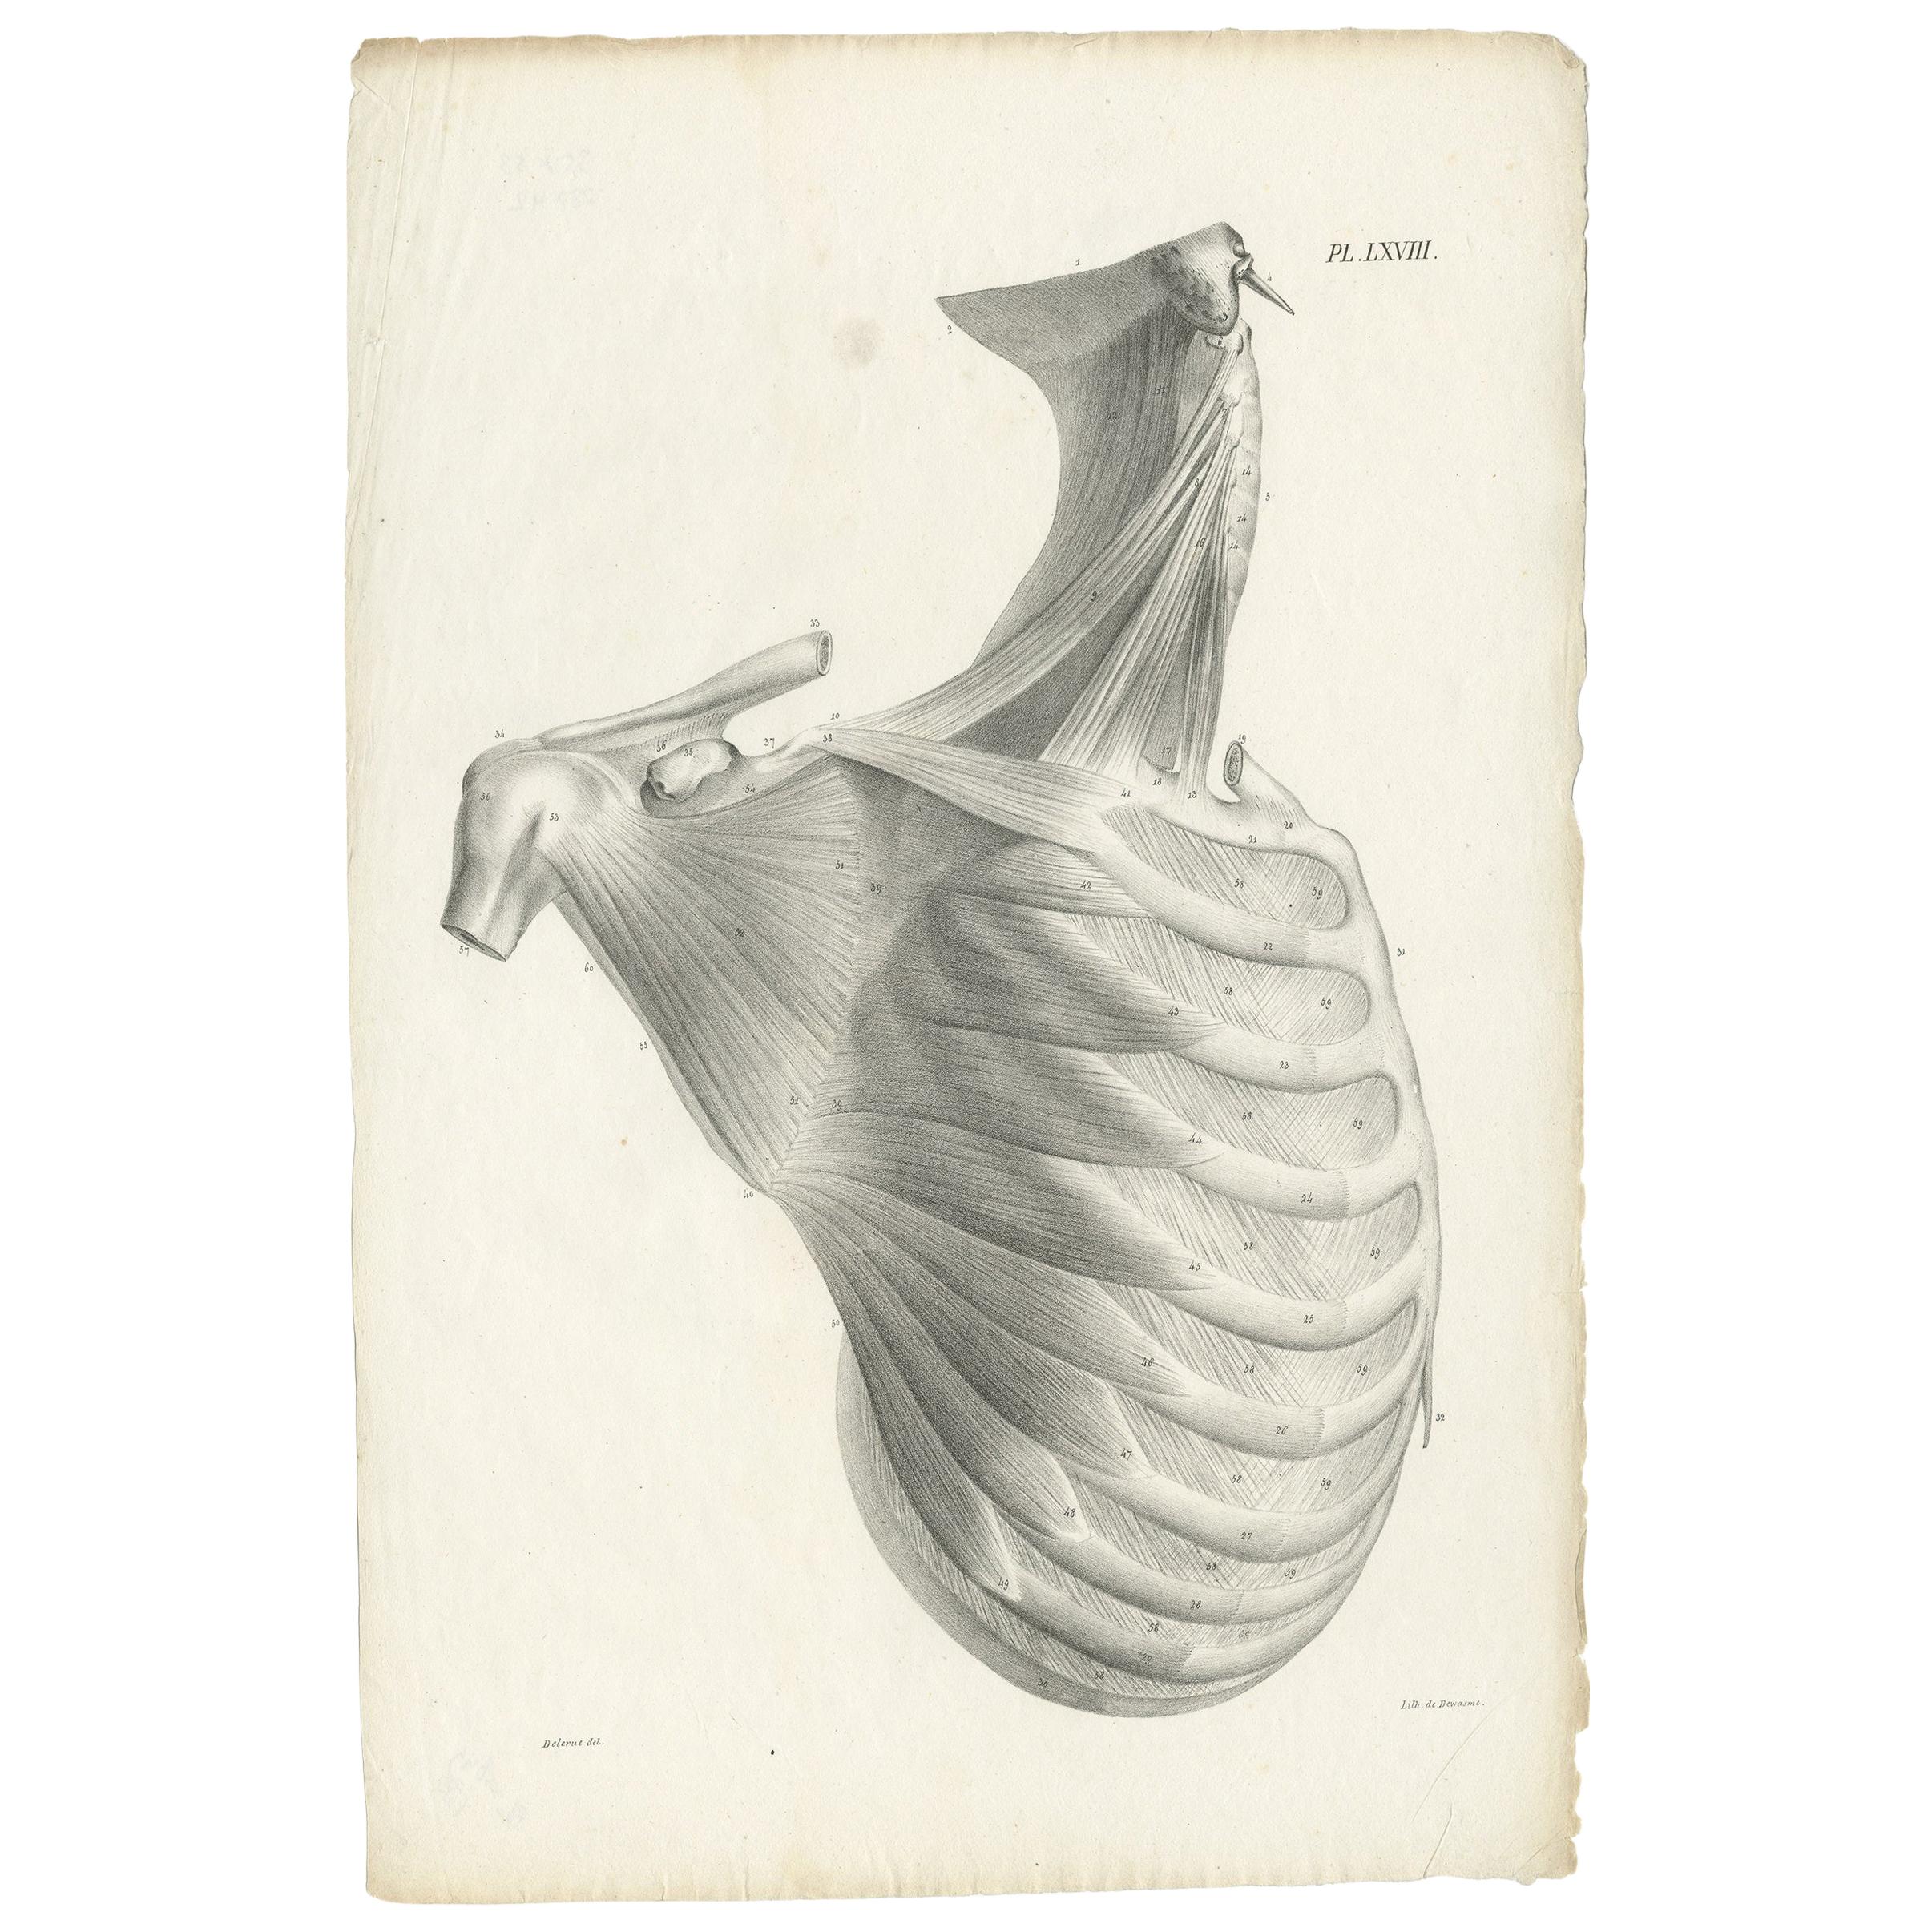 Pl. LXVIII Antike Anatomie / Medizinischer Druck des Rippenkäfigs von Cloquet:: '1821'